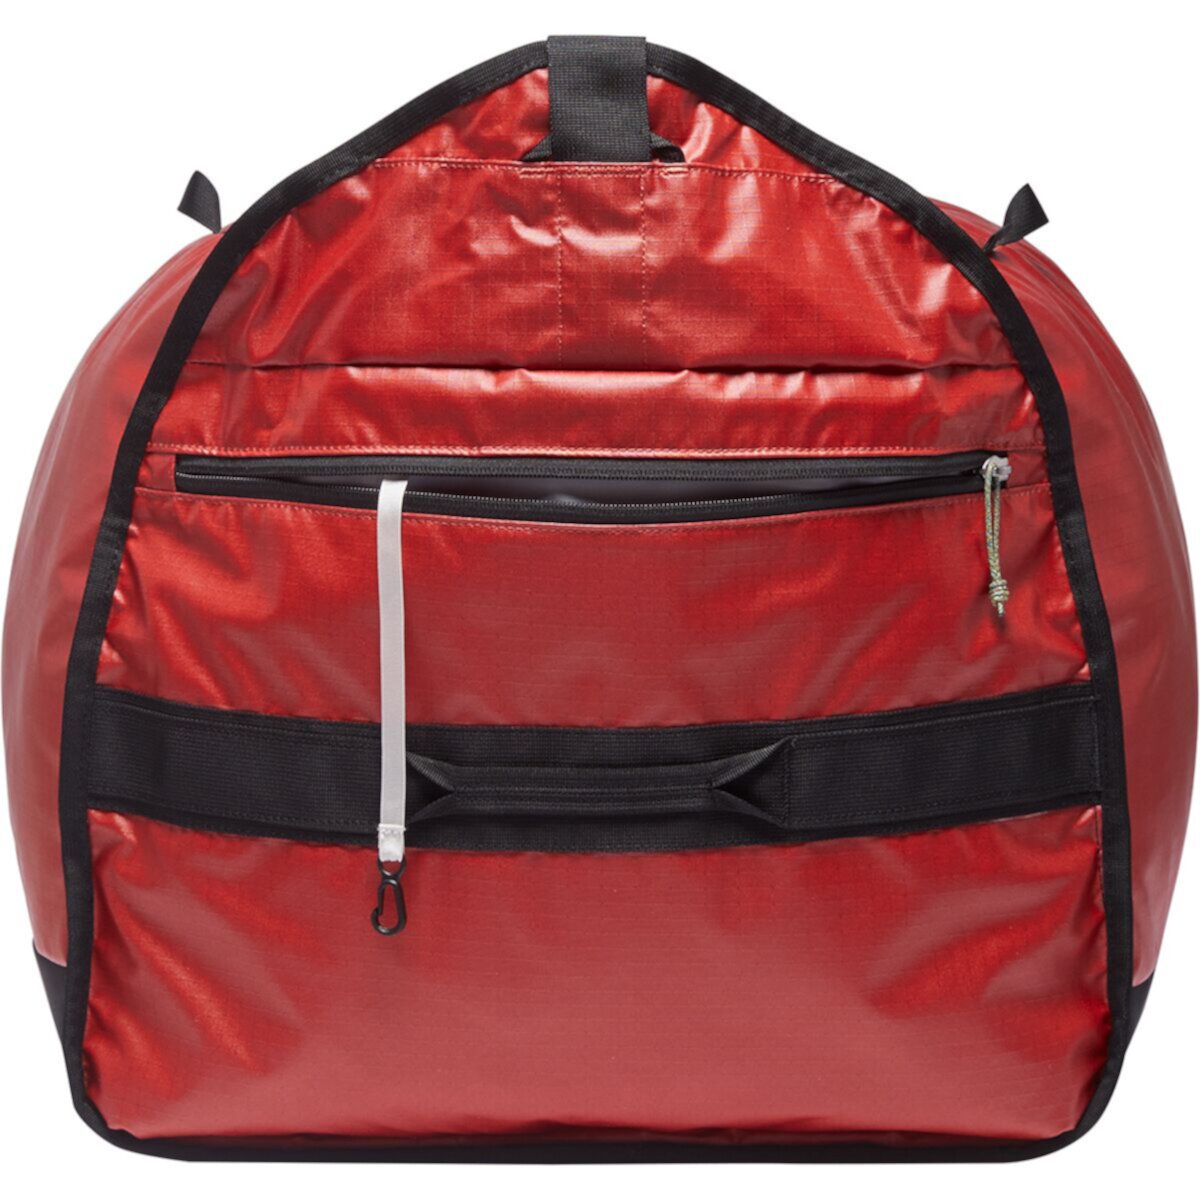 Camp bag. Спортивная сумка для кемпинг с эмблемой огня. Windcamp сумка. Dag Bag sekli.